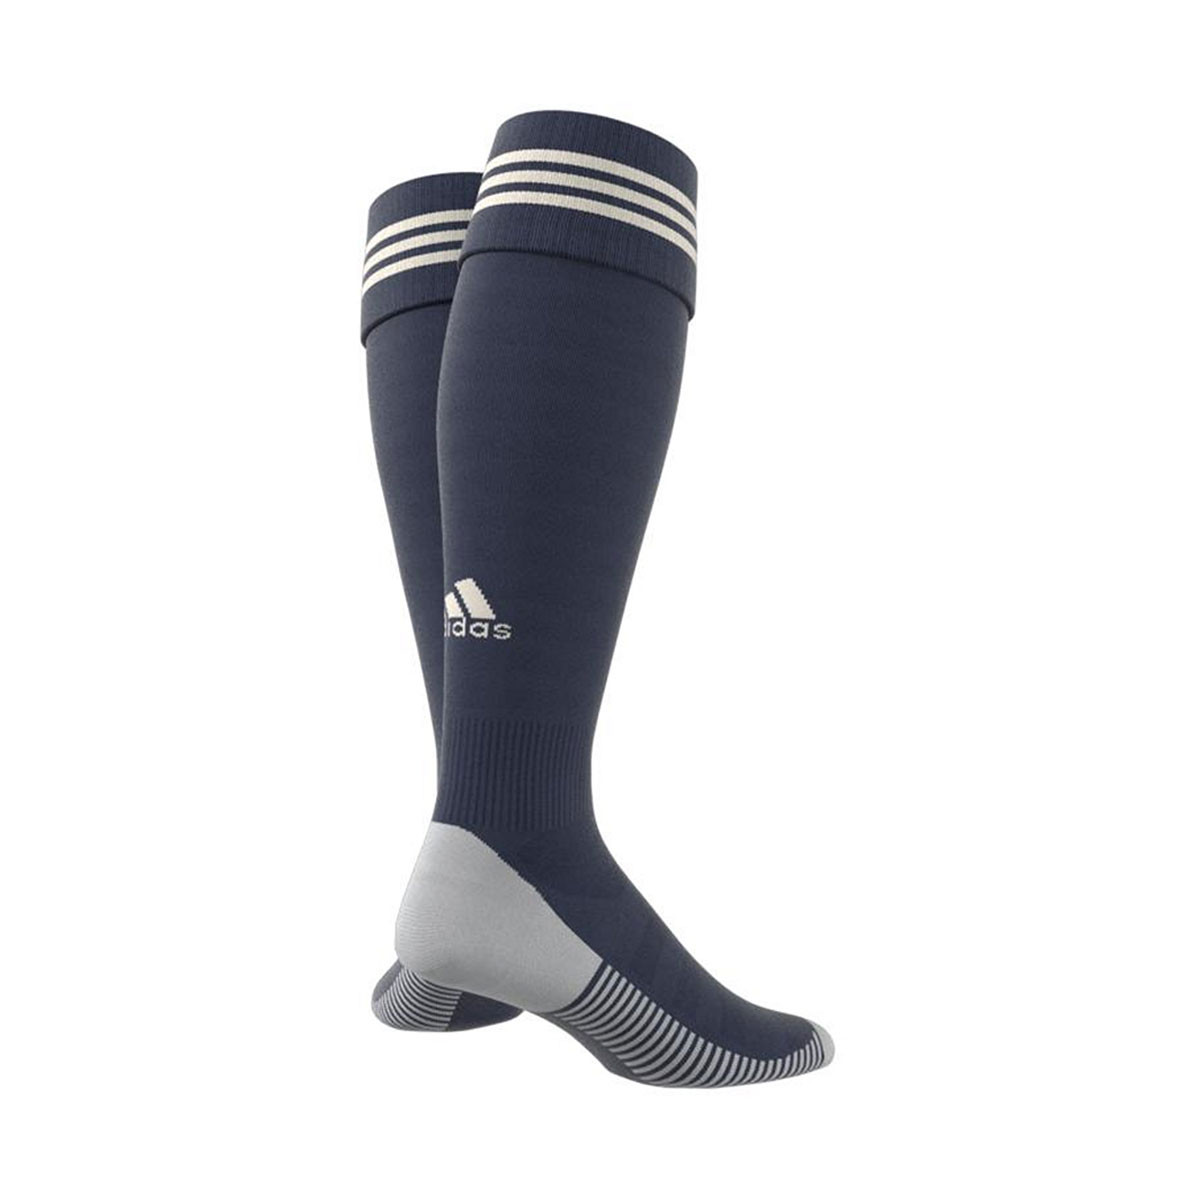 adidas Juventus Away Kit Socks 2020-2021 Football Socks